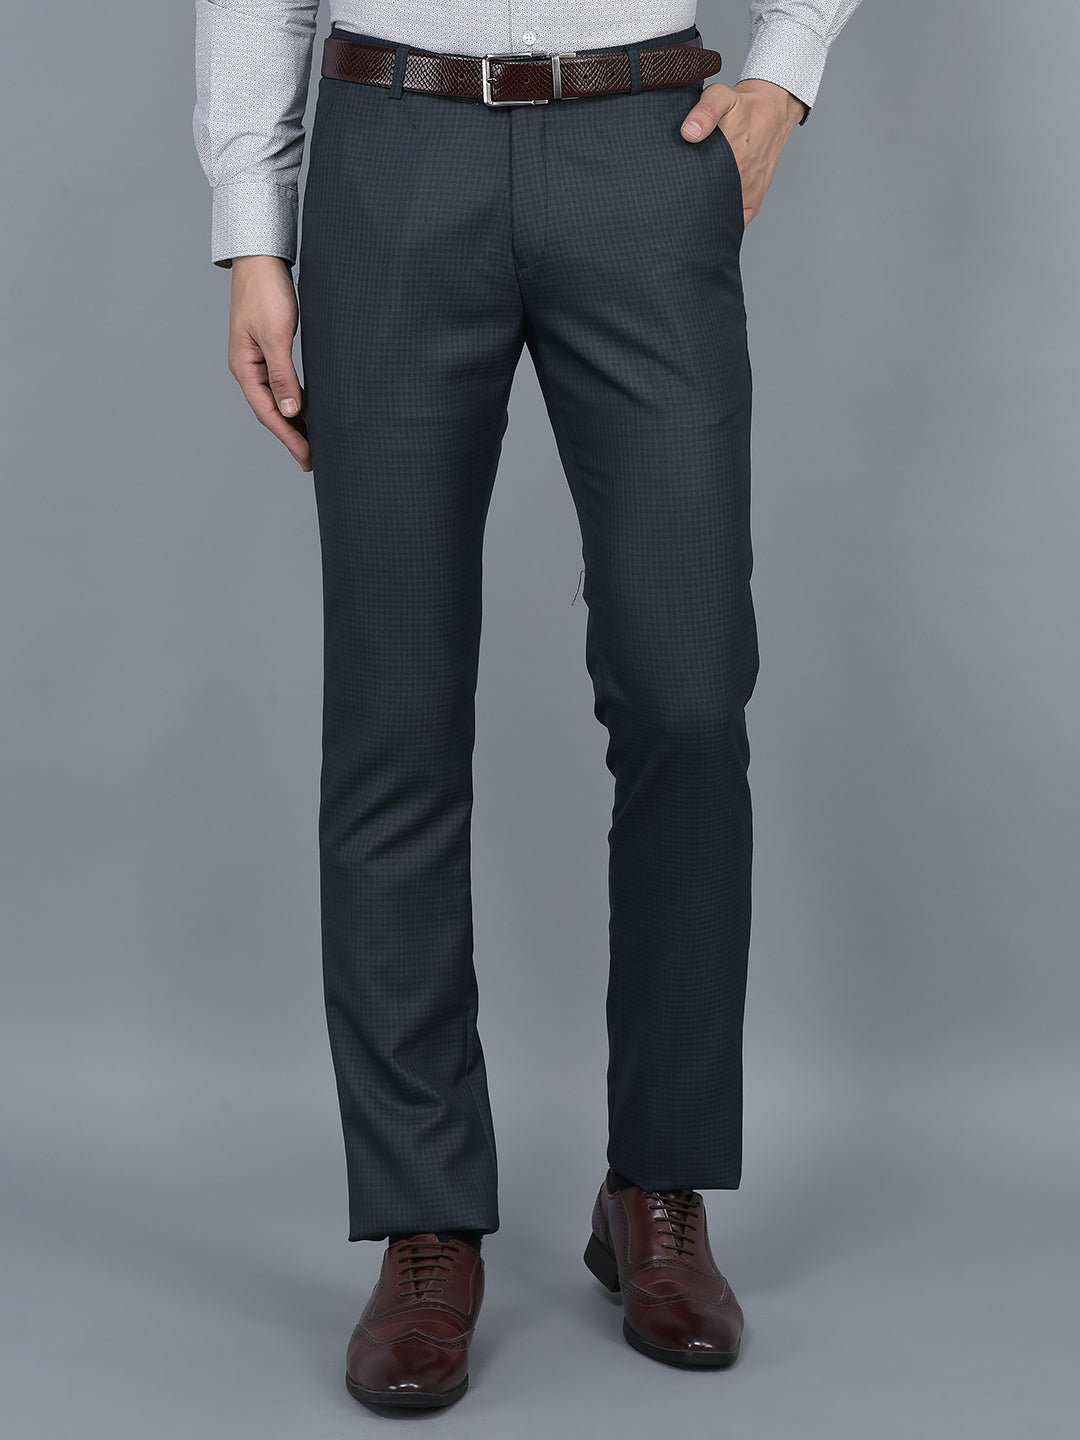 Men's Fashion Stretch Dress Pants Slim Fit Plaid Pants Business Suit Pants  Casual Golf Pants - Walmart.com